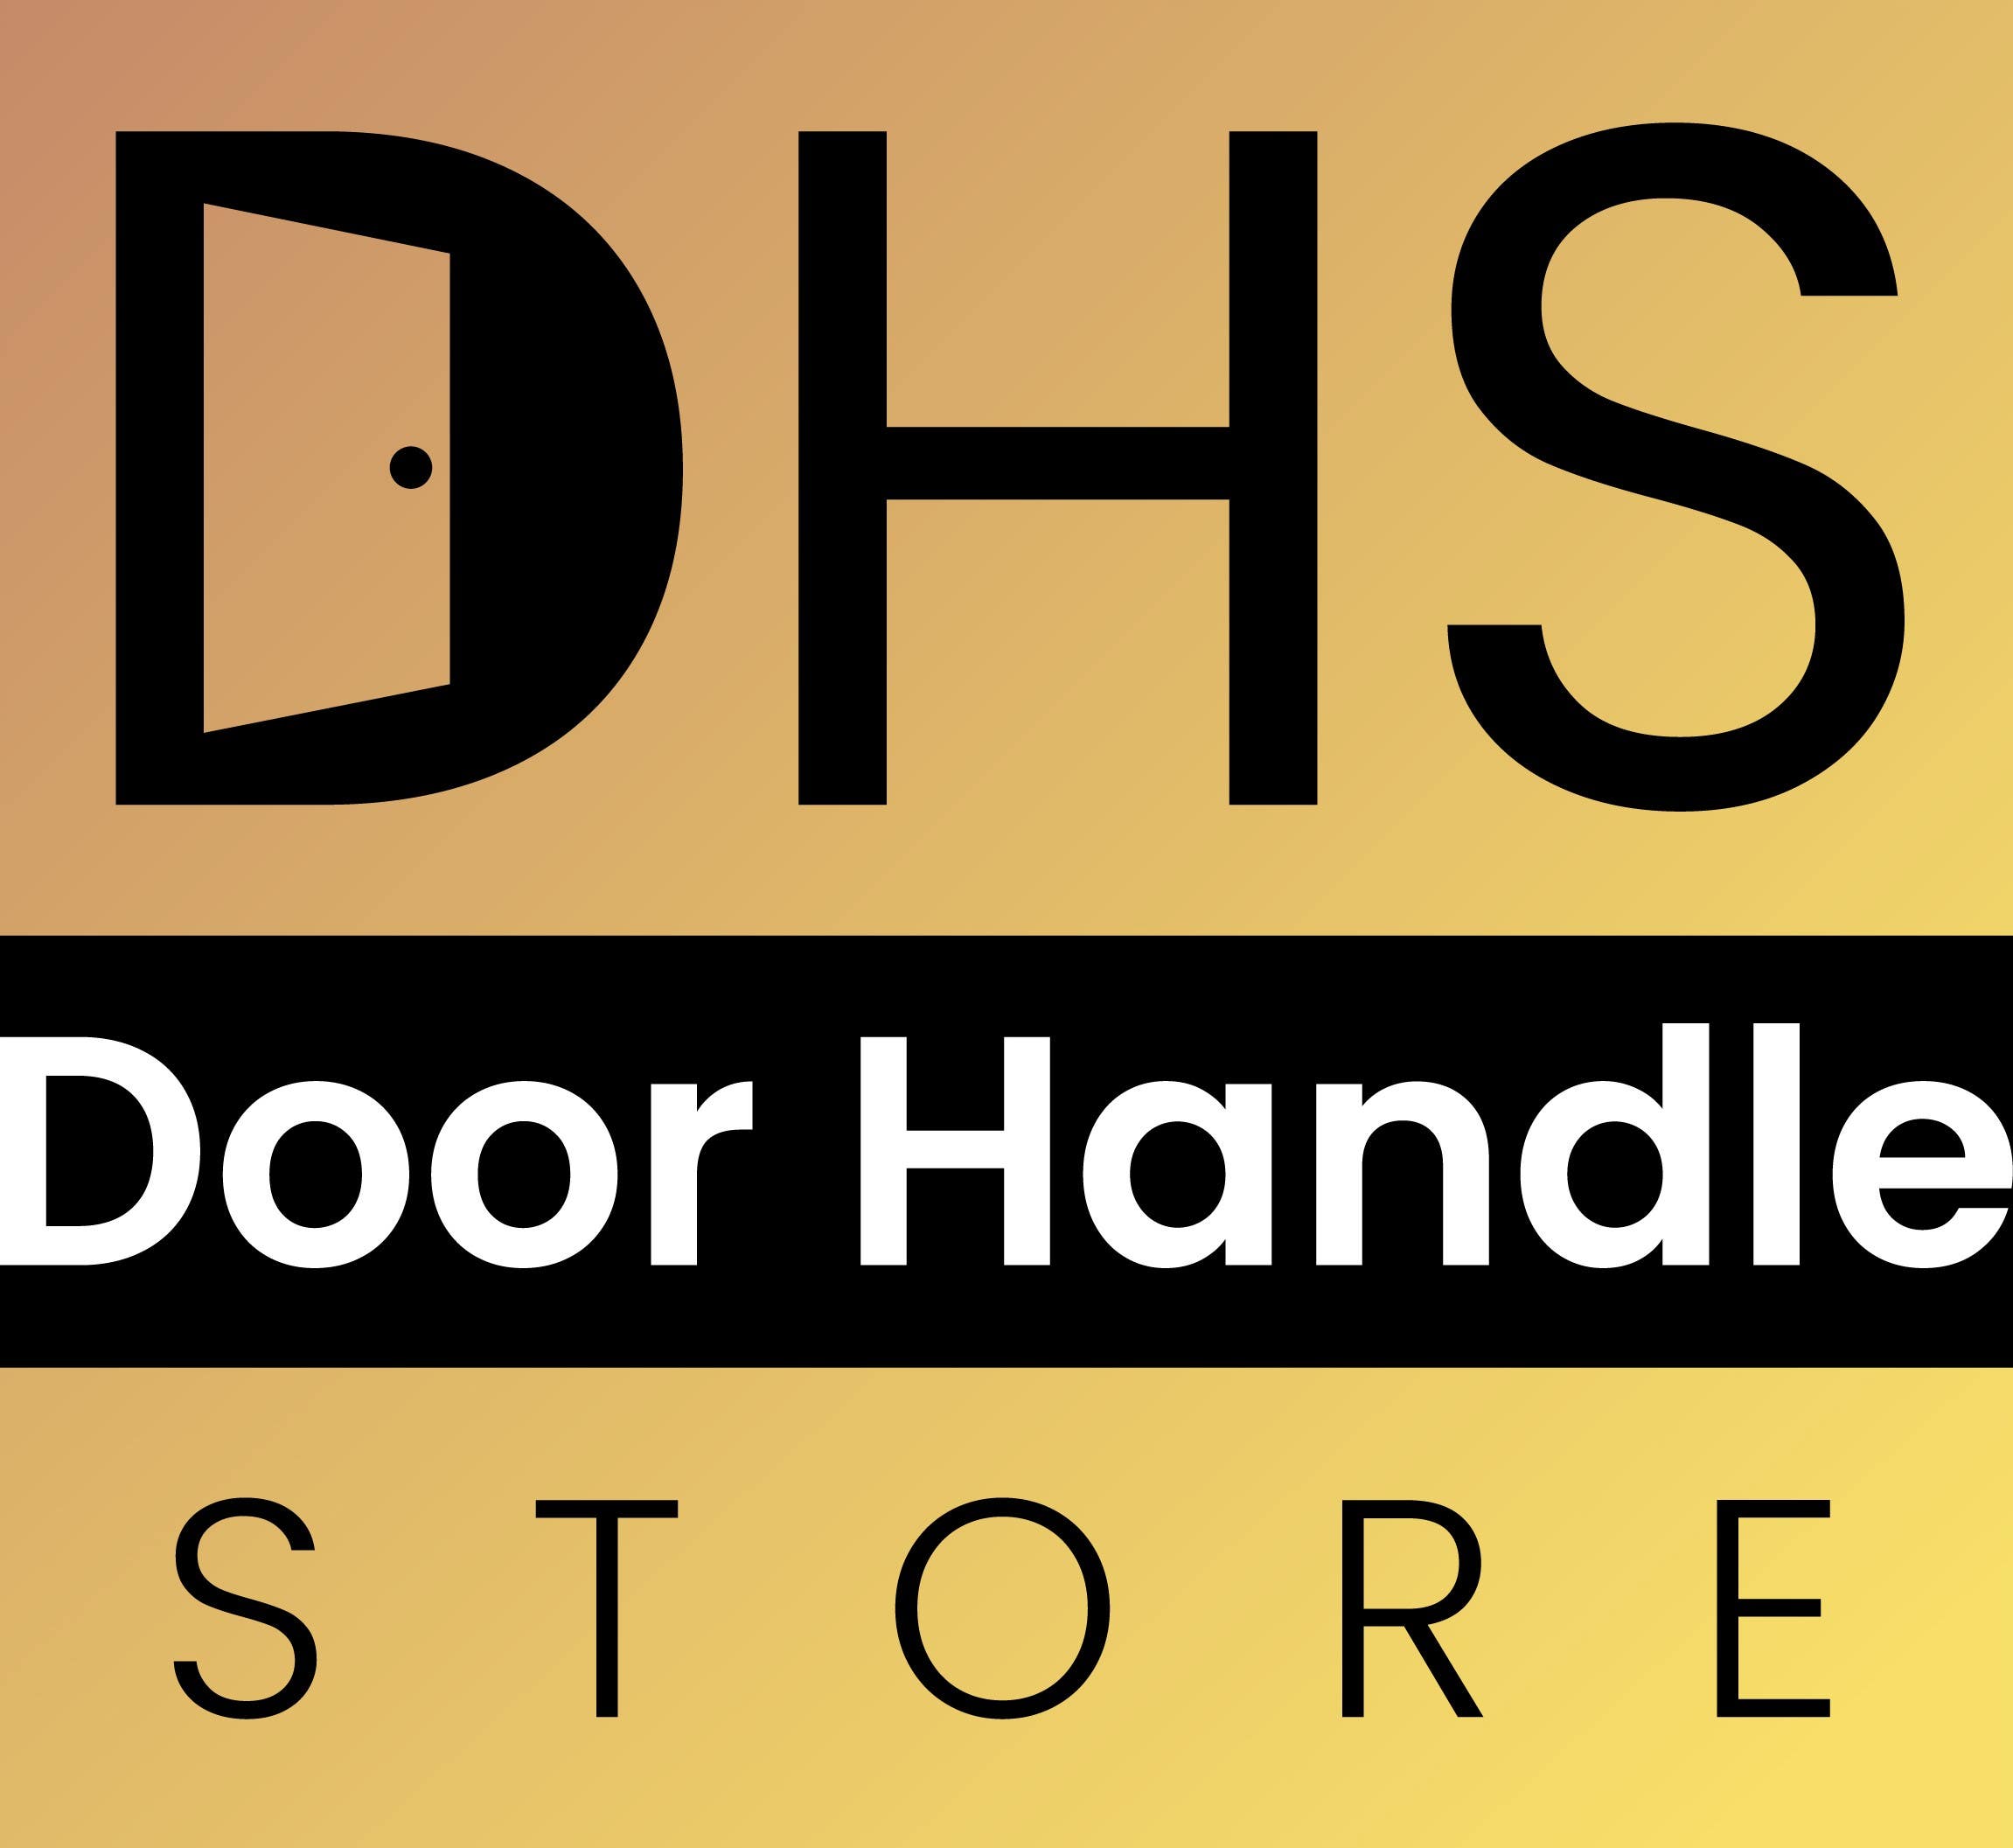 Door Handle Store